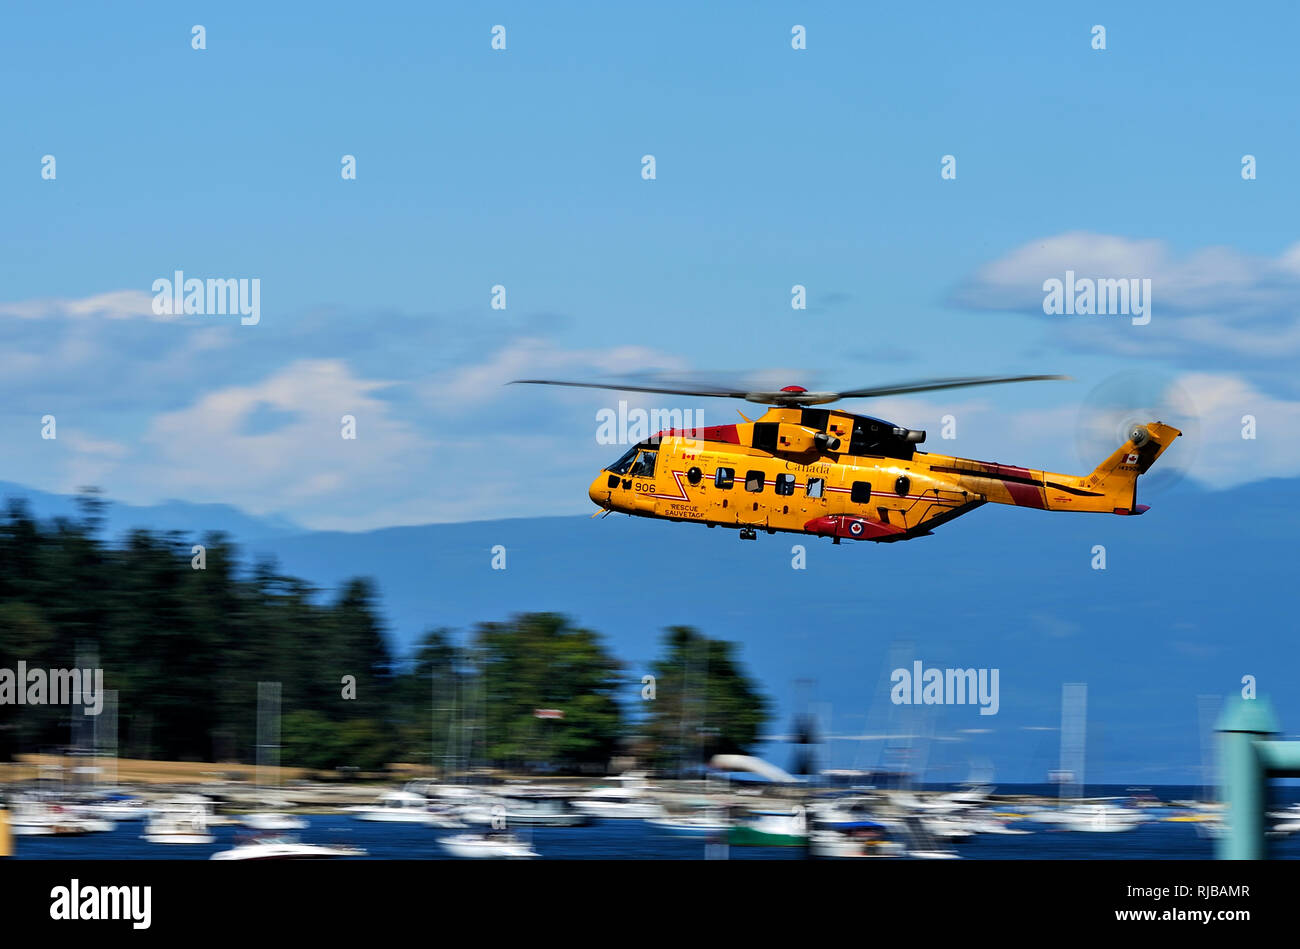 Agusta Westland CH-149 hélicoptère de recherche et de sauvetage Cormorant en vol au-dessus du port de Nanaimo Île de Vancouver Colombie-Britannique, Canada. Banque D'Images